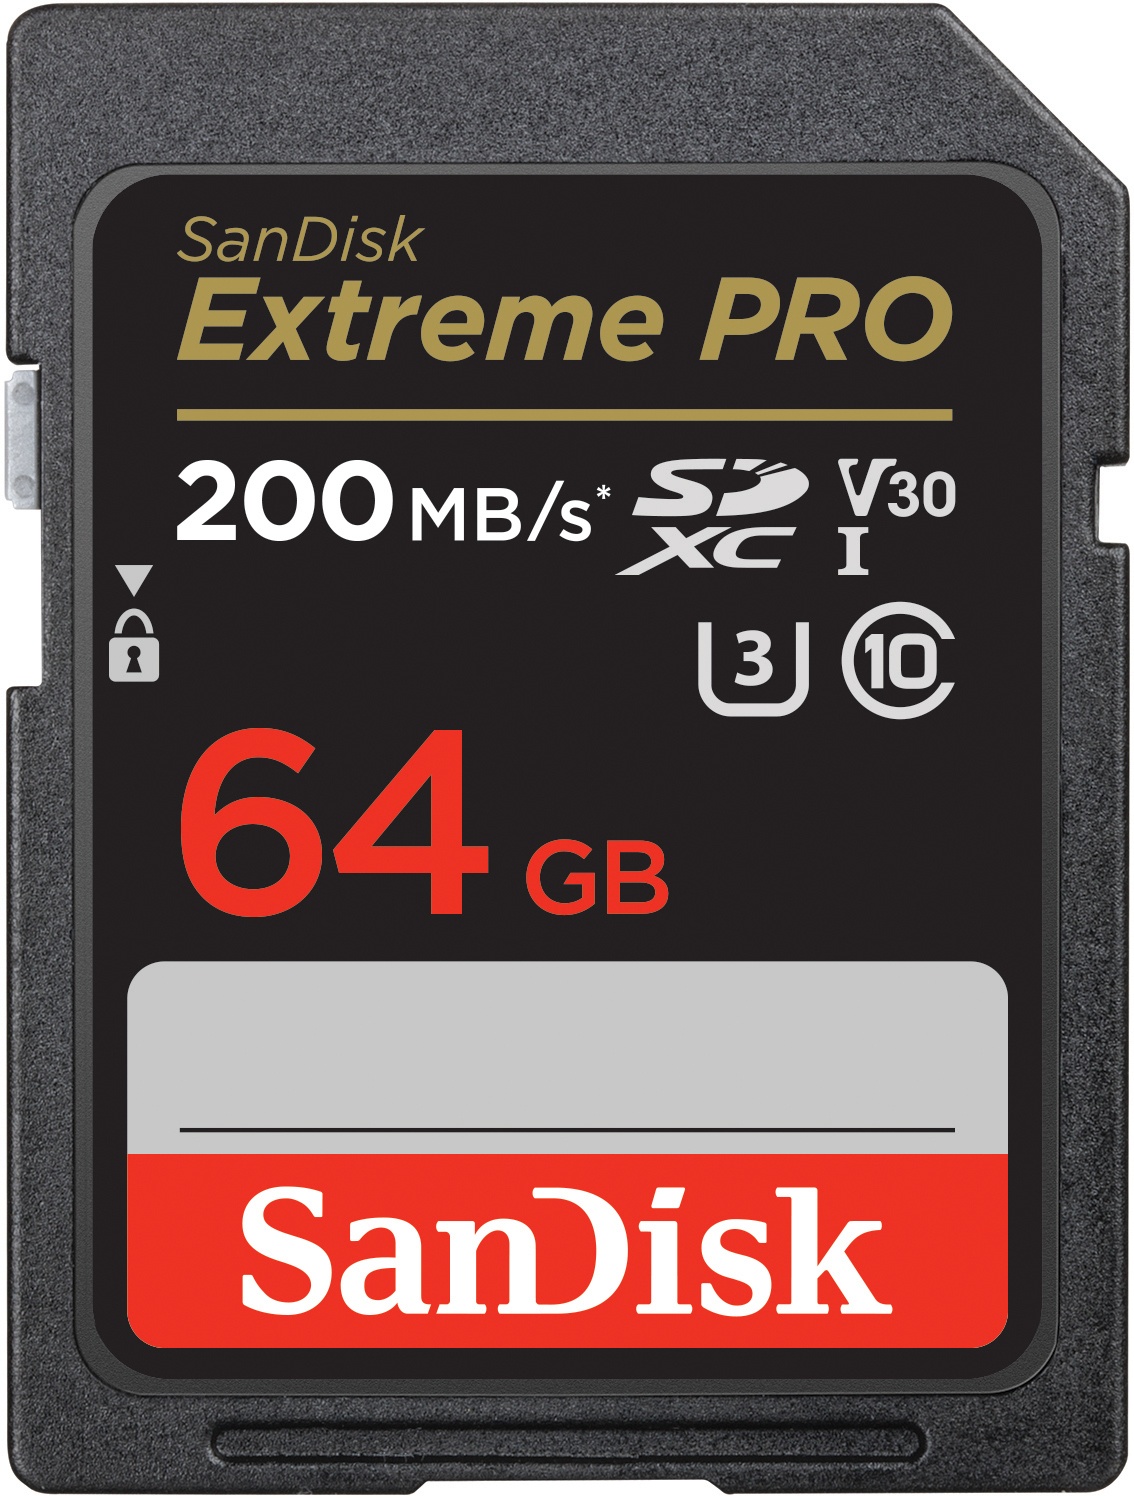 SanDisk Extreme PRO 64GB SDHC Speicherkarte, 200MB/s & 90MB/s Lese/Schreibgeschwindigkeit, UHS-I, Class 10, U3, V3